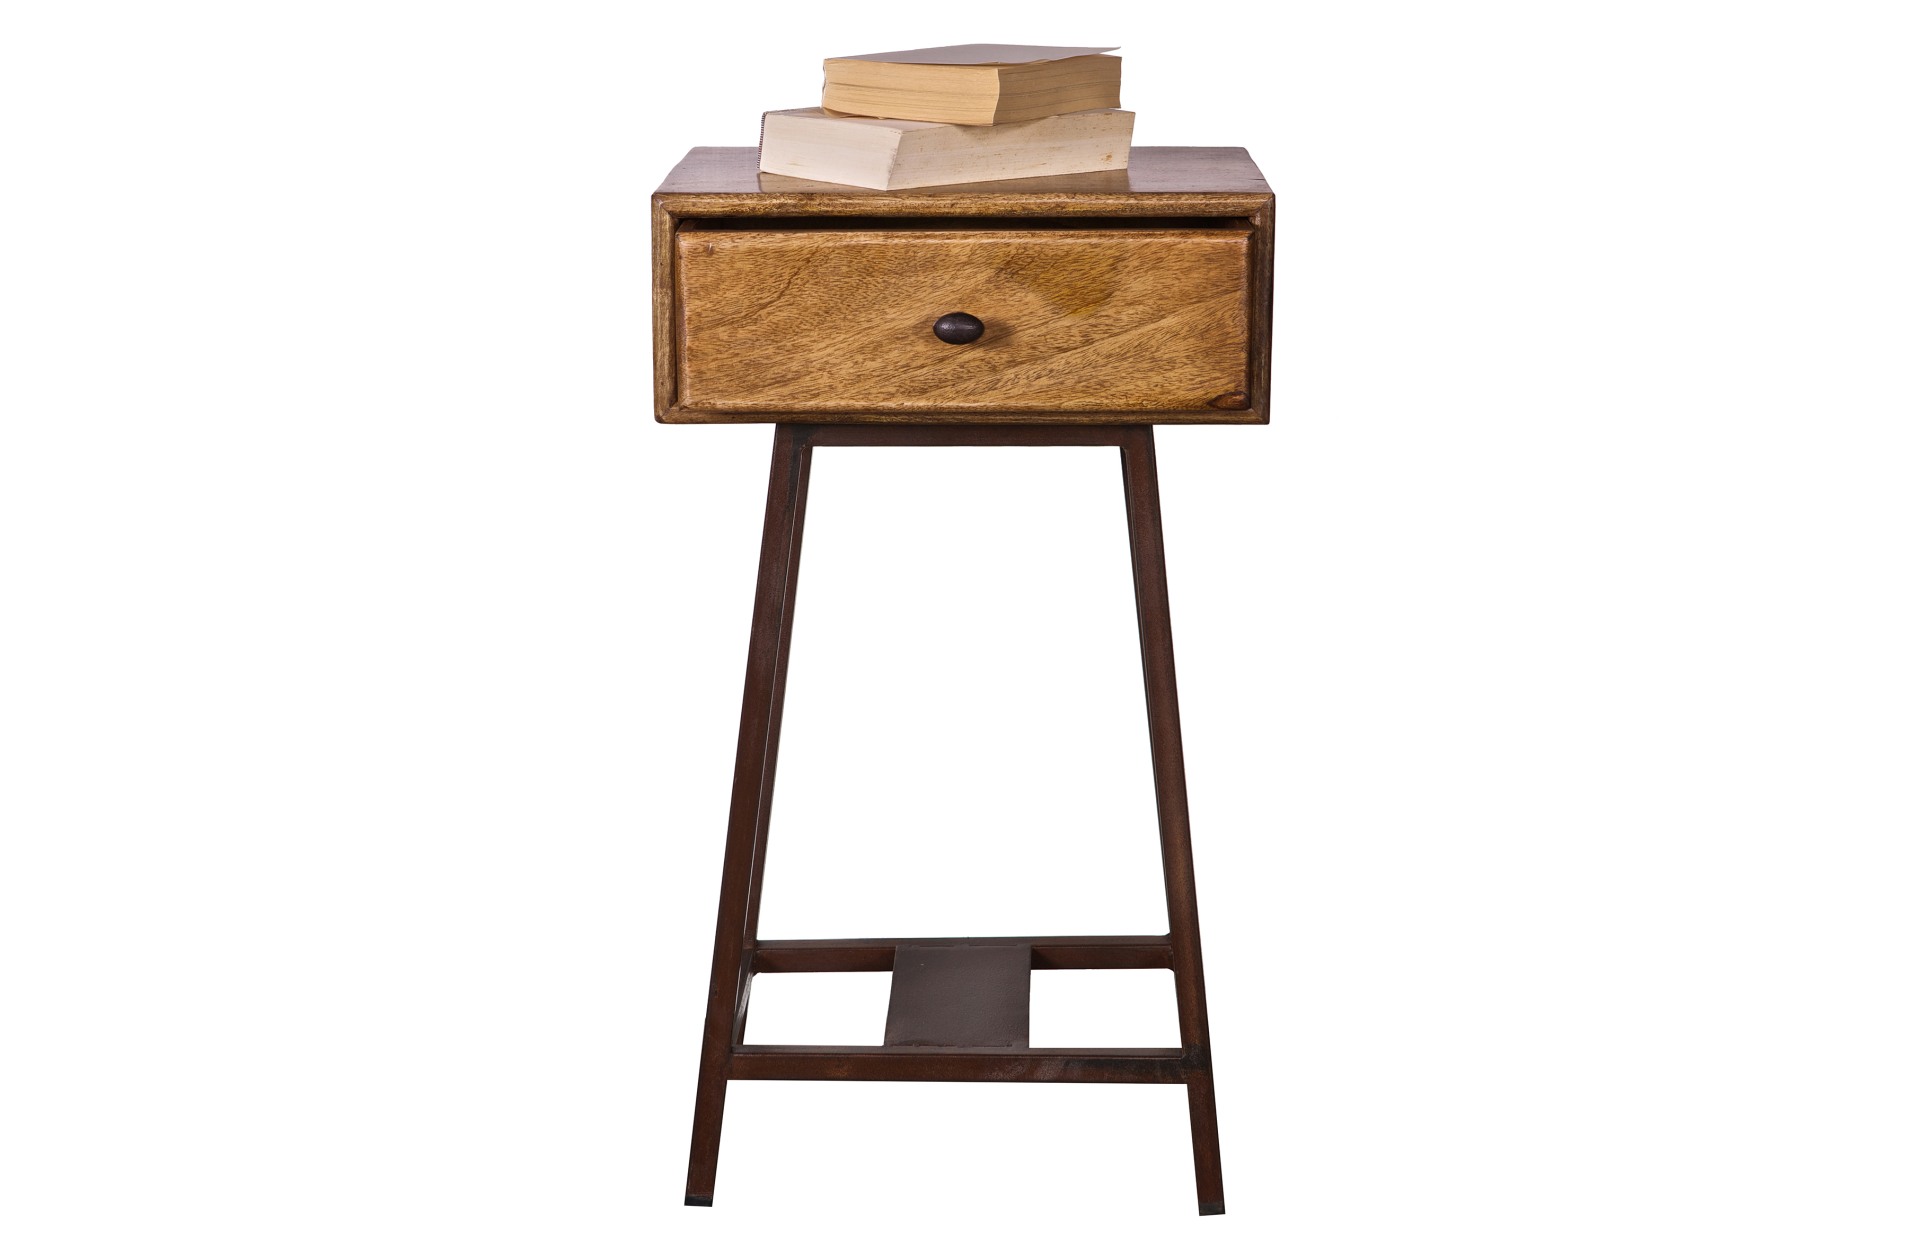 Der Beistelltisch Skybox überzeugt mit seinem besonderem Design. Der Tisch wurde aus Holz gefertigt und verfügt über eine Schublade. Das Gestell ist aus Metall. Der Beistelltisch hat einen natürlichen Farbton